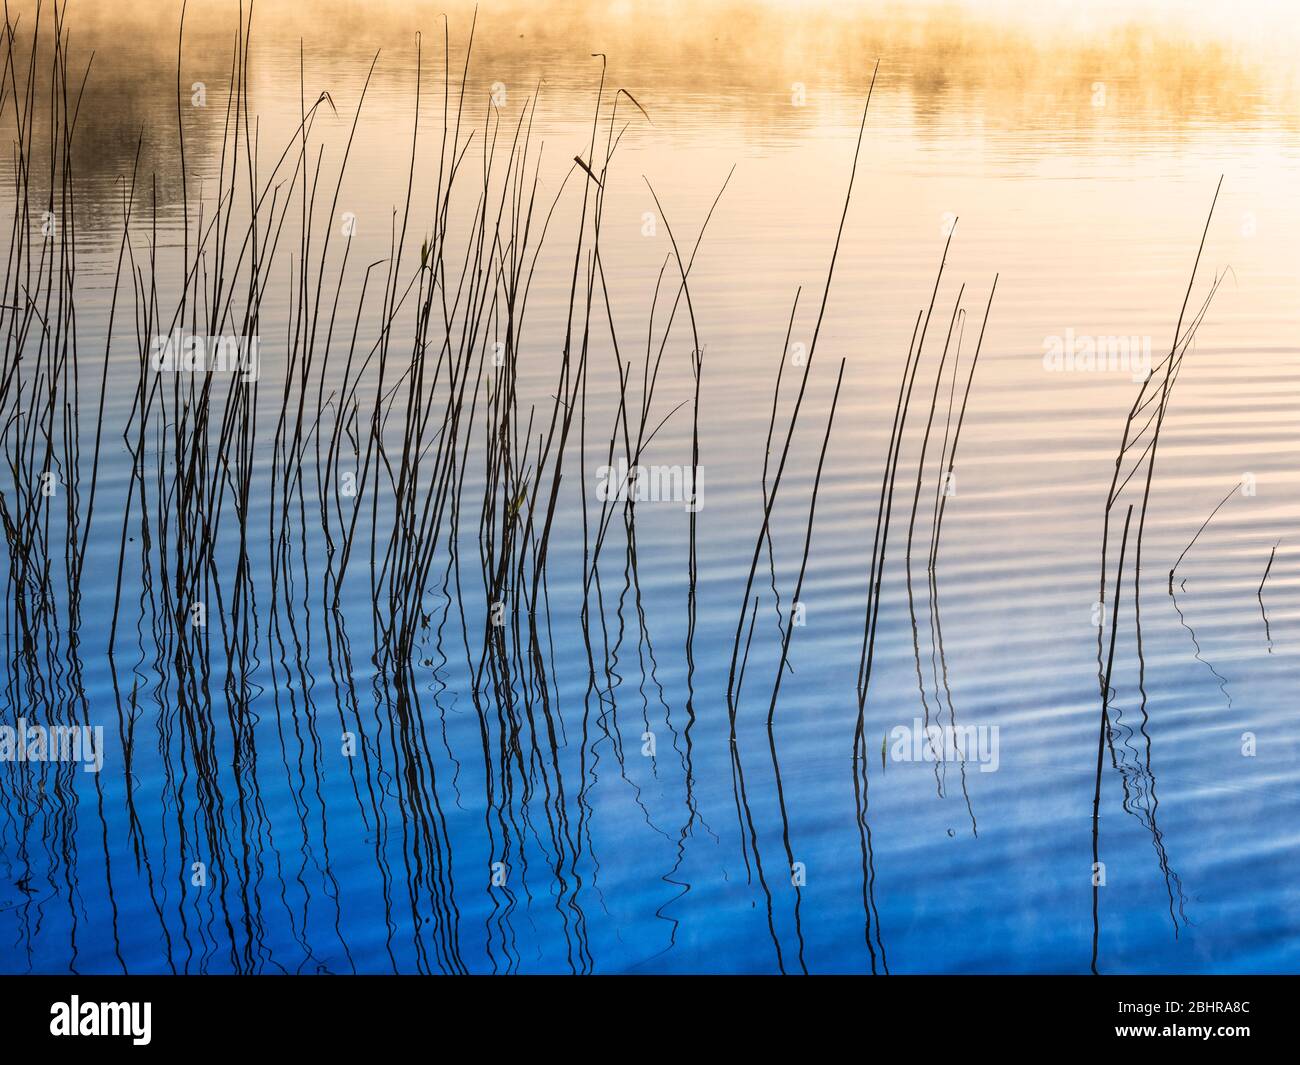 Un'immagine semplice e minimalista, presa attraverso canne al bordo di un lago in una mattinata di prima nebbia. Foto Stock